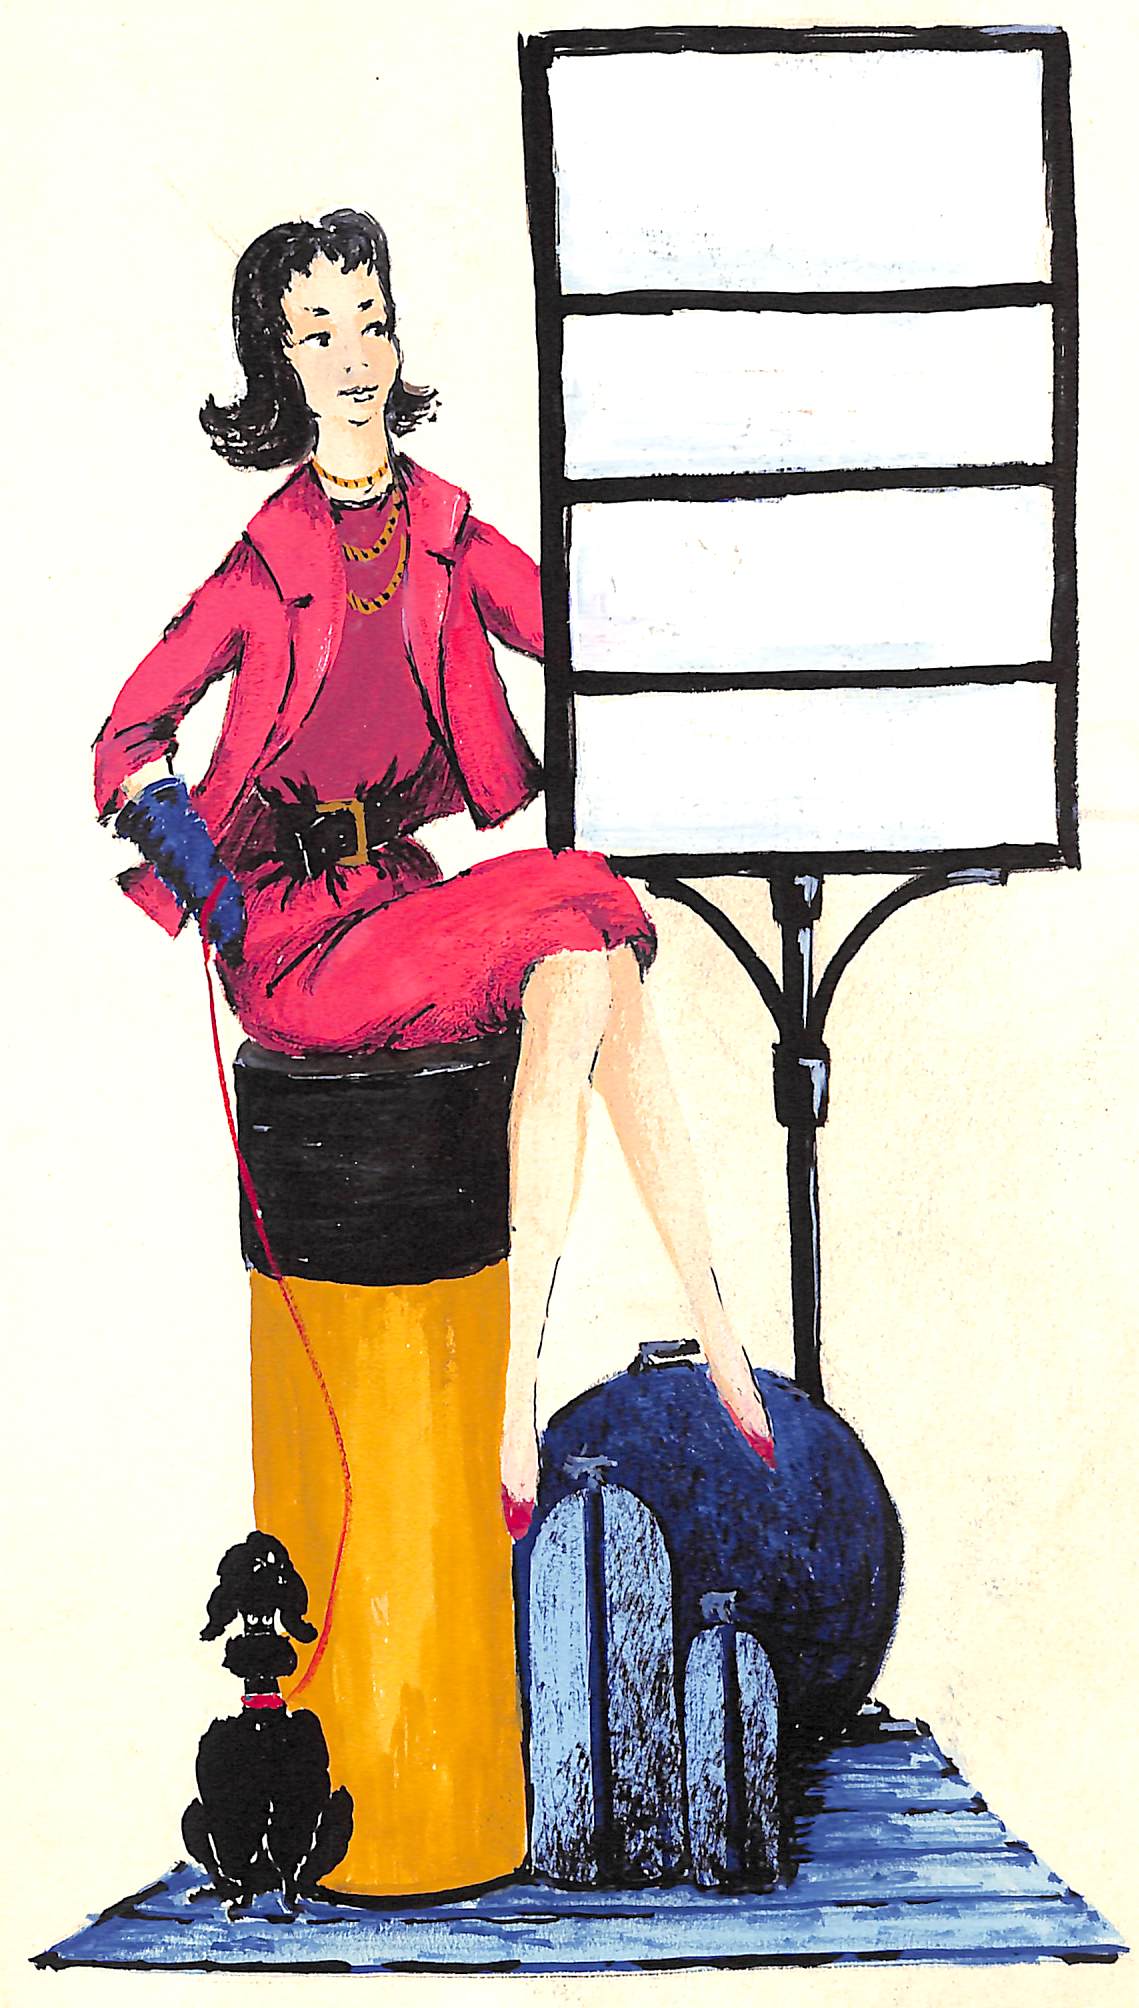 Lanvin Paris Perfume w/ Chic Lady & Poodle c1950s Advertising Artwork